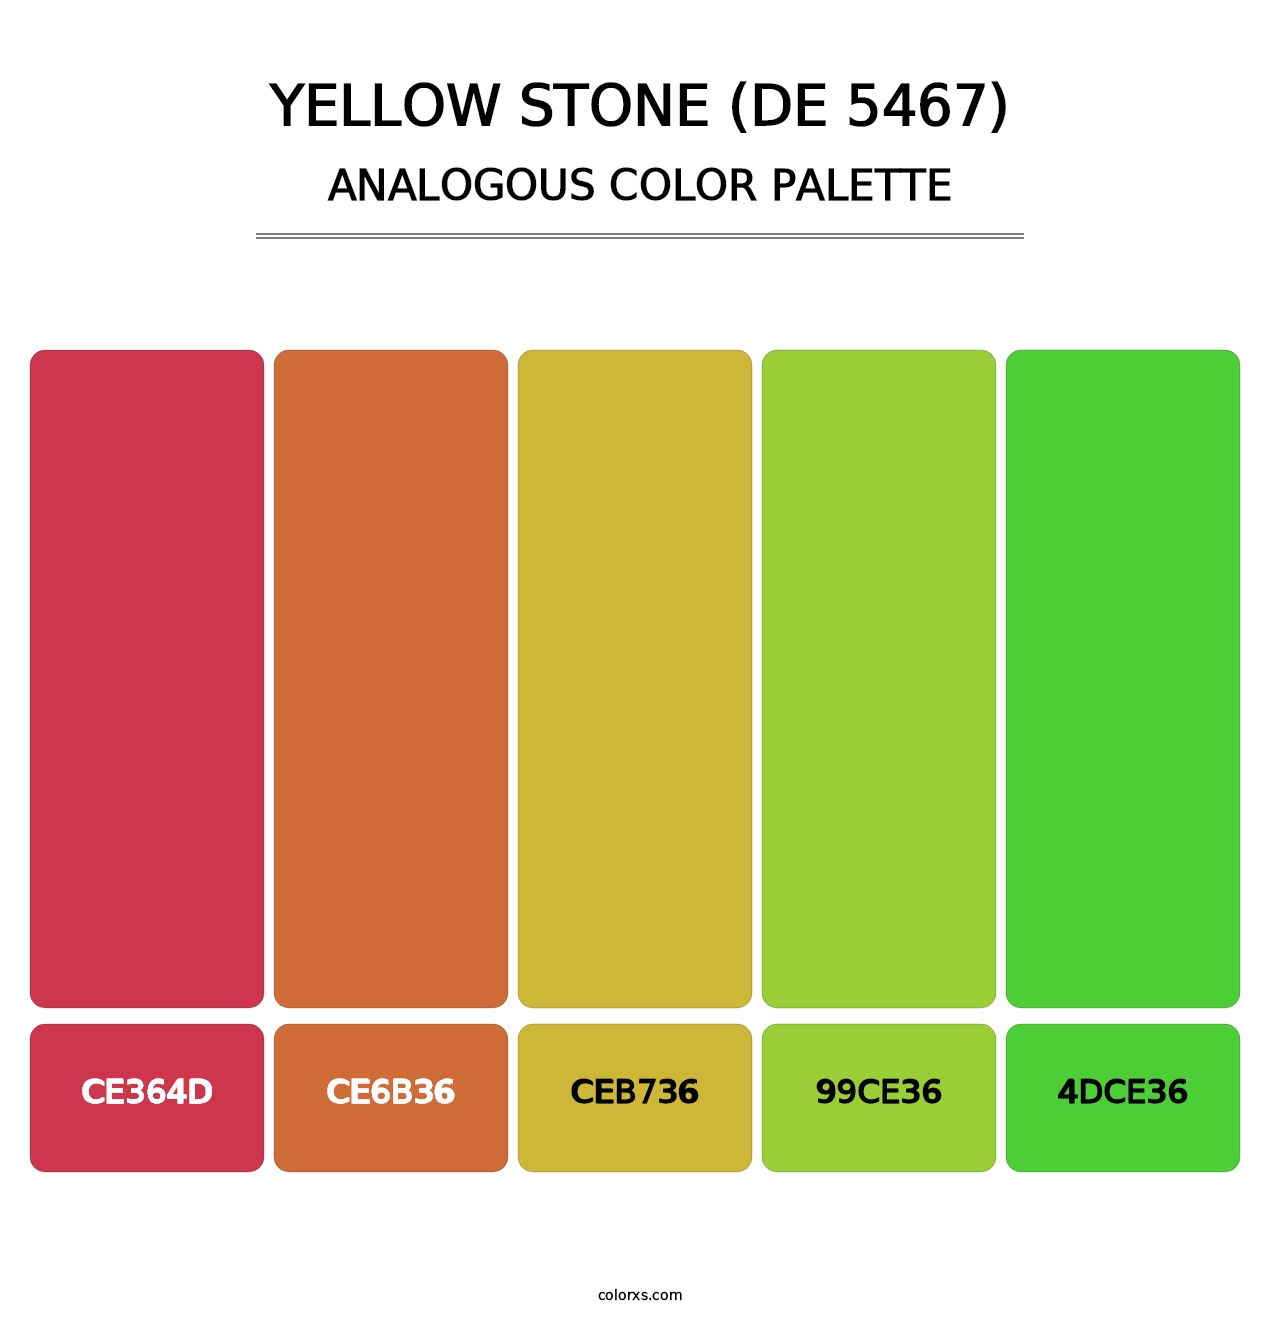 Yellow Stone (DE 5467) - Analogous Color Palette